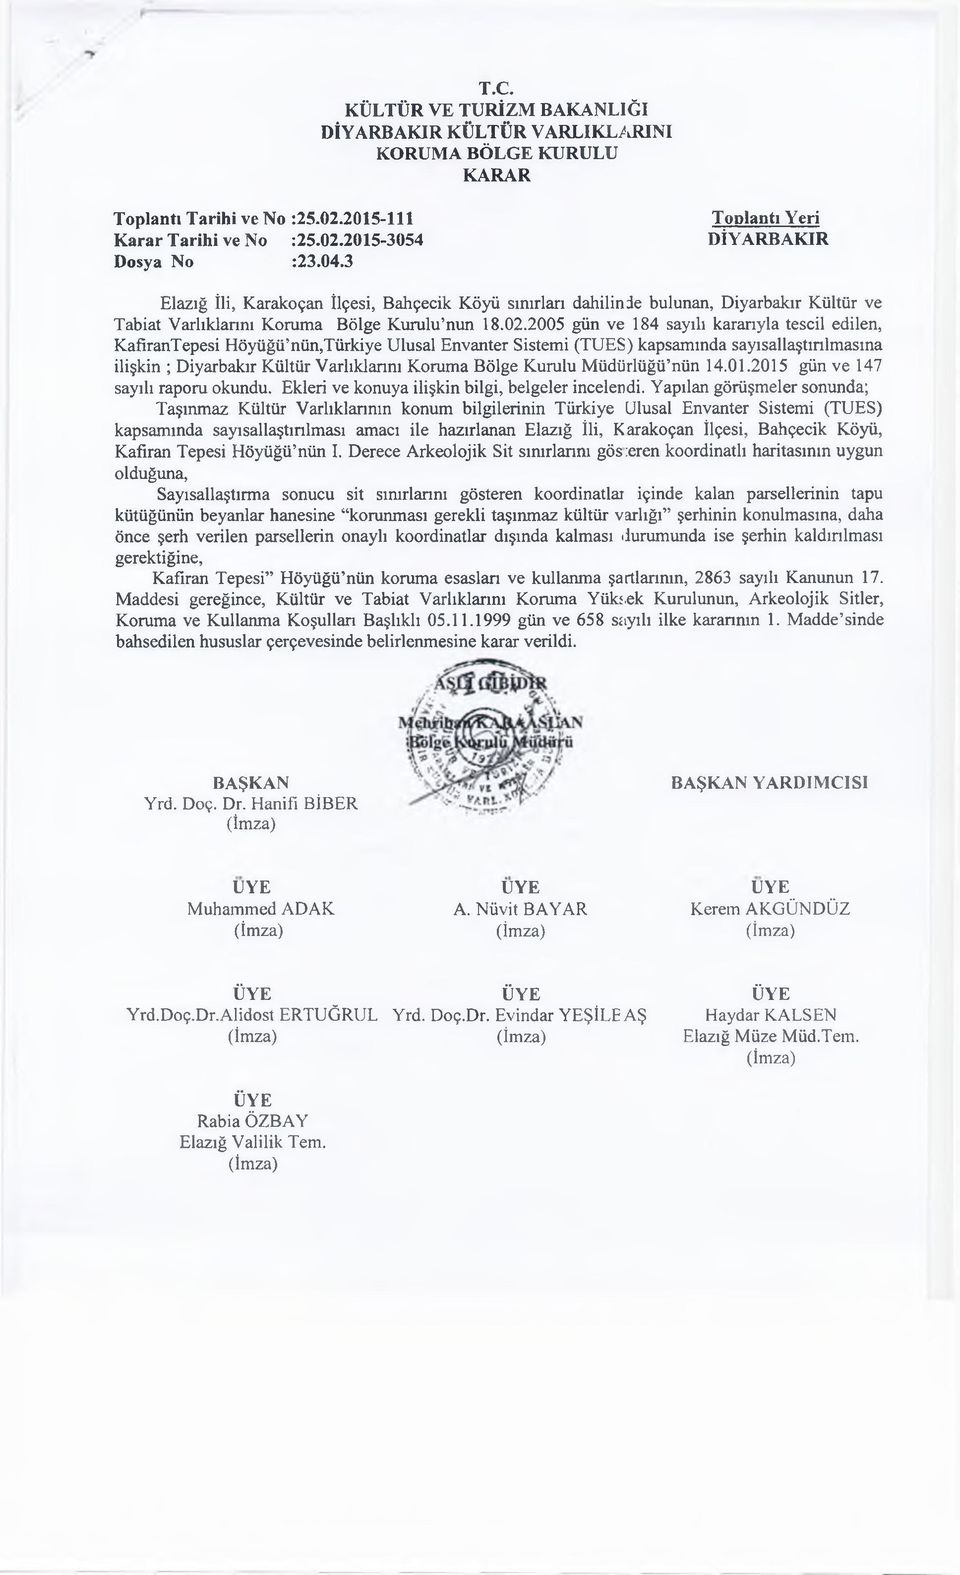 2005 gün ve 184 sayılı karanyla tescil edilen, KafiranTepesi Höyüğü nün,türkiye Ulusal Envanter Sistemi (TUES) kapsamında sayısallaştınlmasına ilişkin ; Diyarbakır Kültür Varlıklarım Koruma Bölge